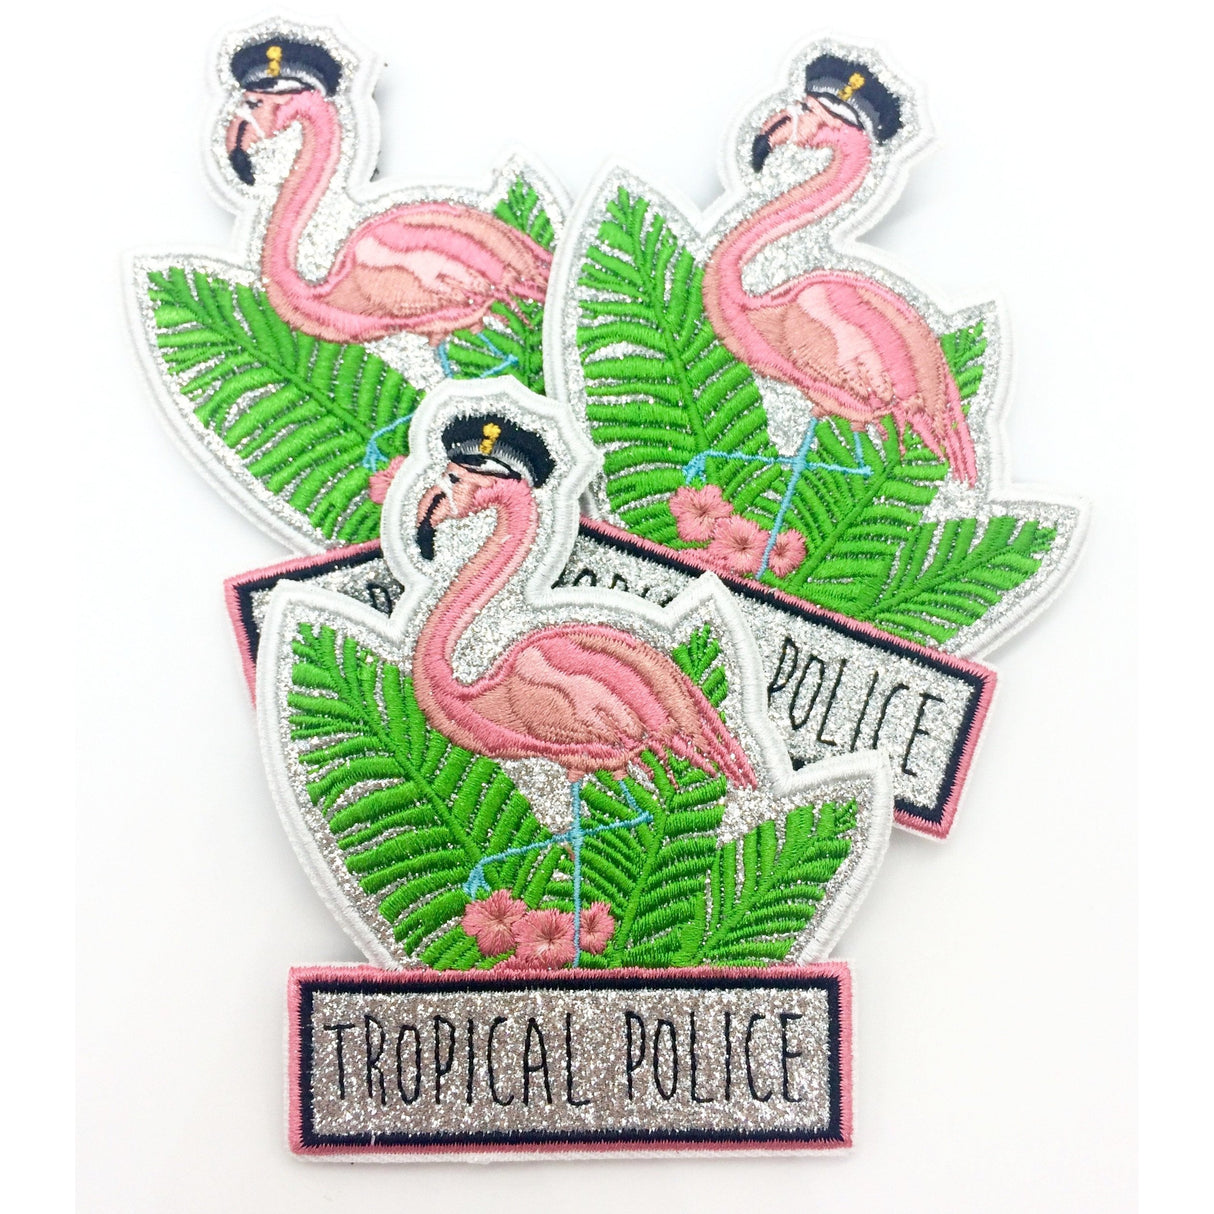 Tropical Police Funpatch Textil Klett - Polizeimemesshop